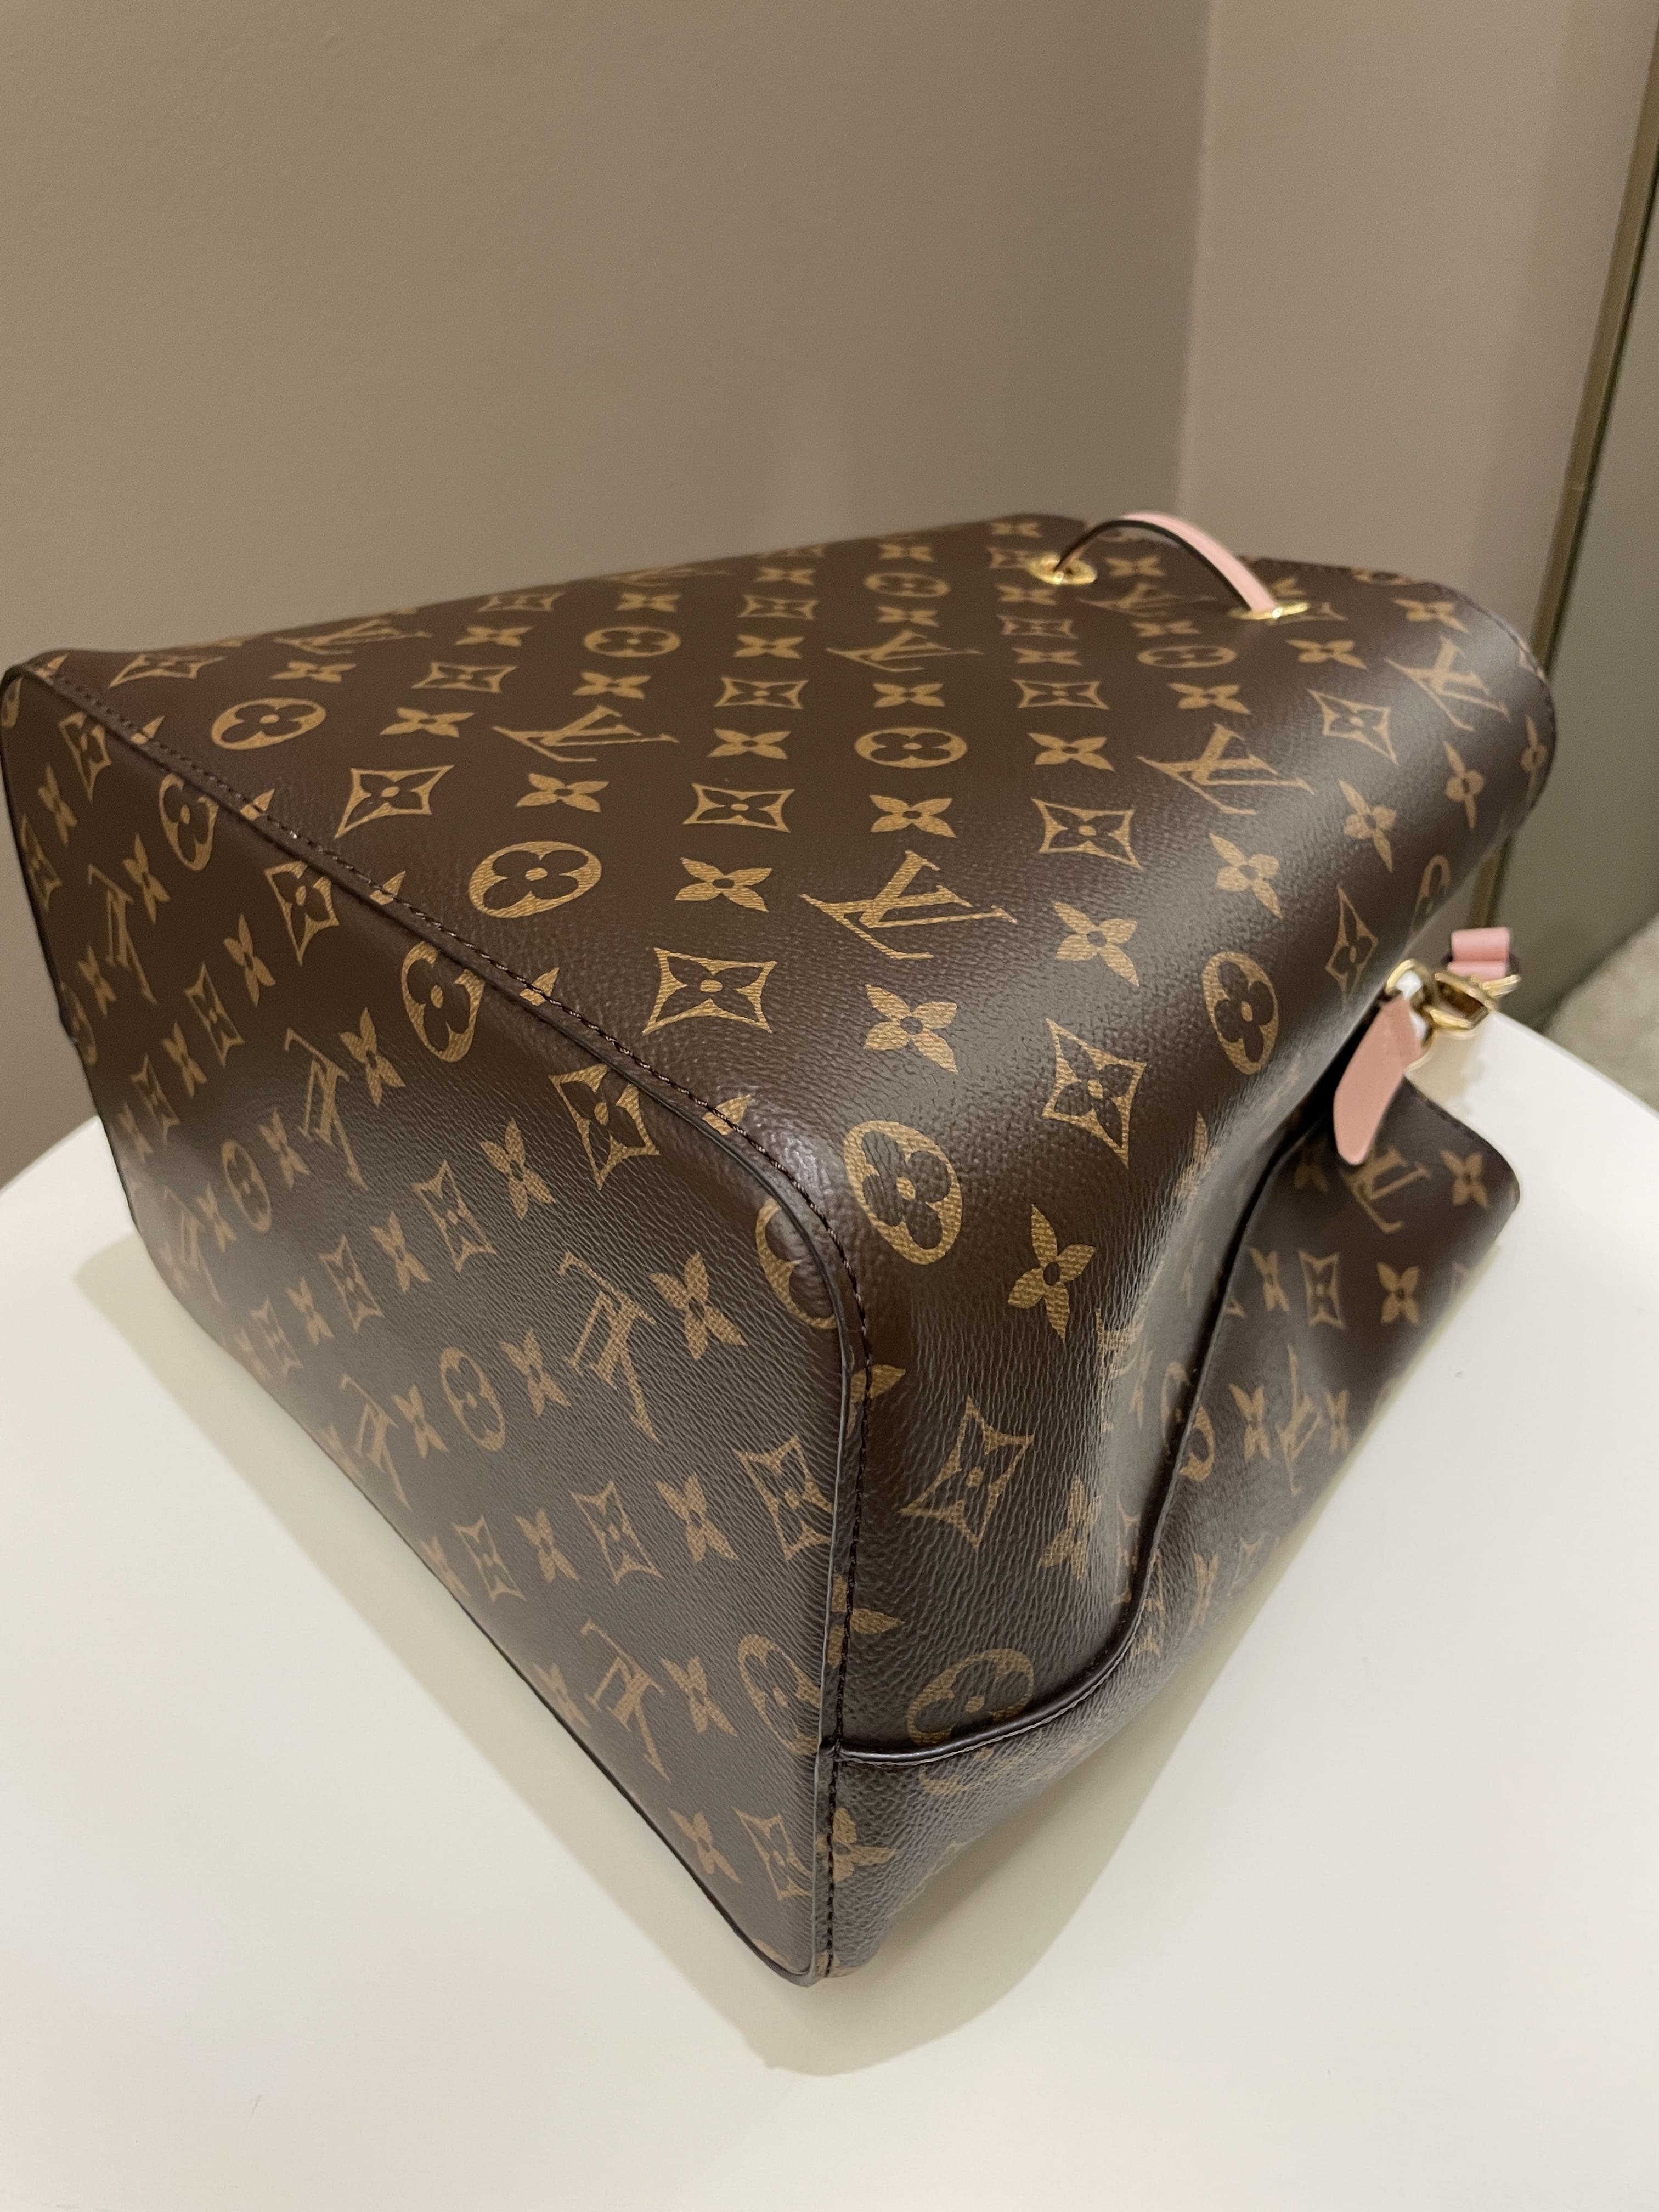 Louis Vuitton Neonoe Bucket Bag MM Monogram Canvas Rose Poudre